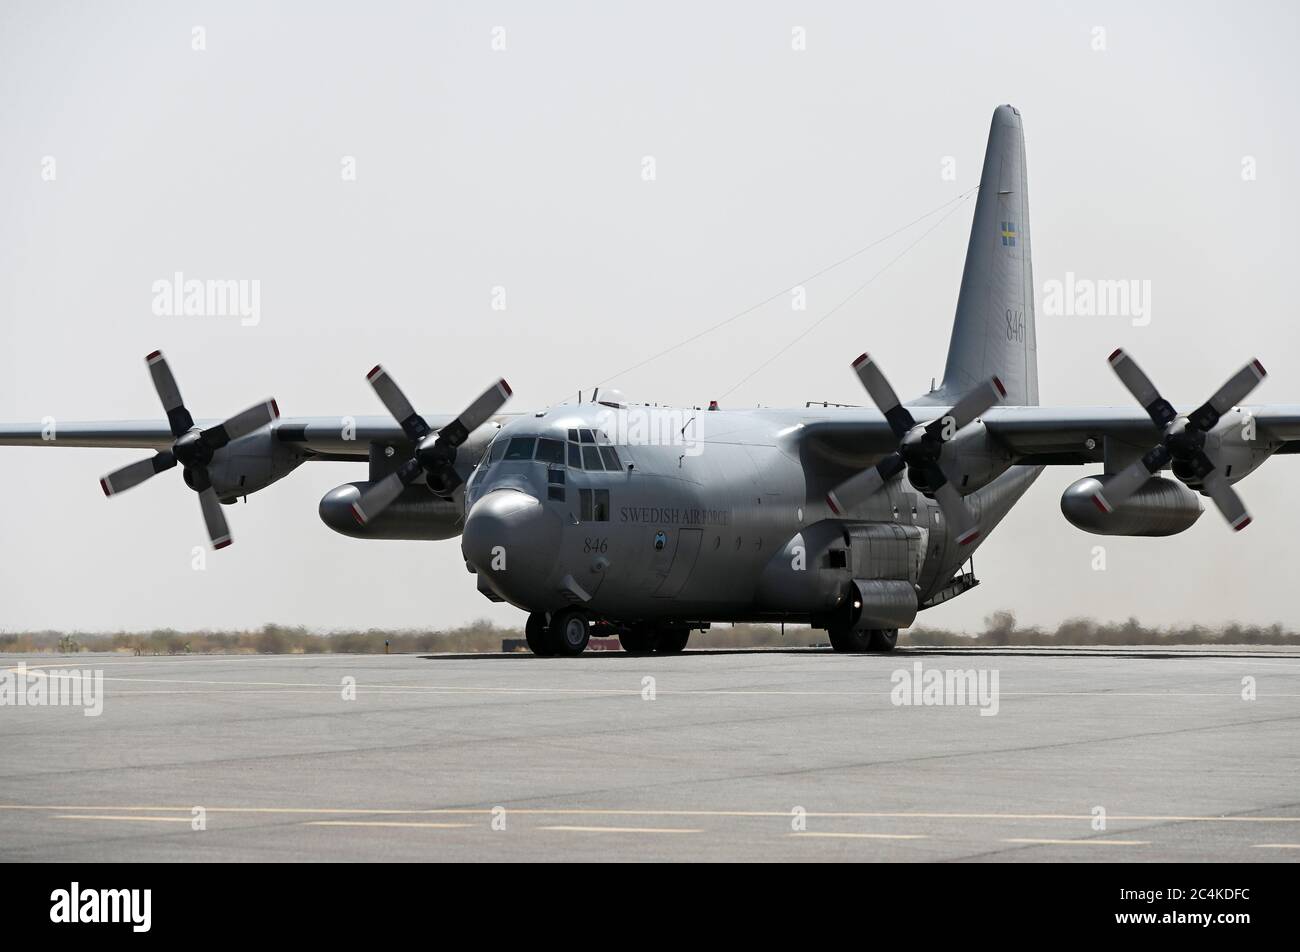 MALI, Gao, MINUSMA Misión de mantenimiento de la paz de la ONU, aeropuerto Gao, transporte de carga por la fuerza aérea sueca con Lockheed C-130 Hercules Foto de stock